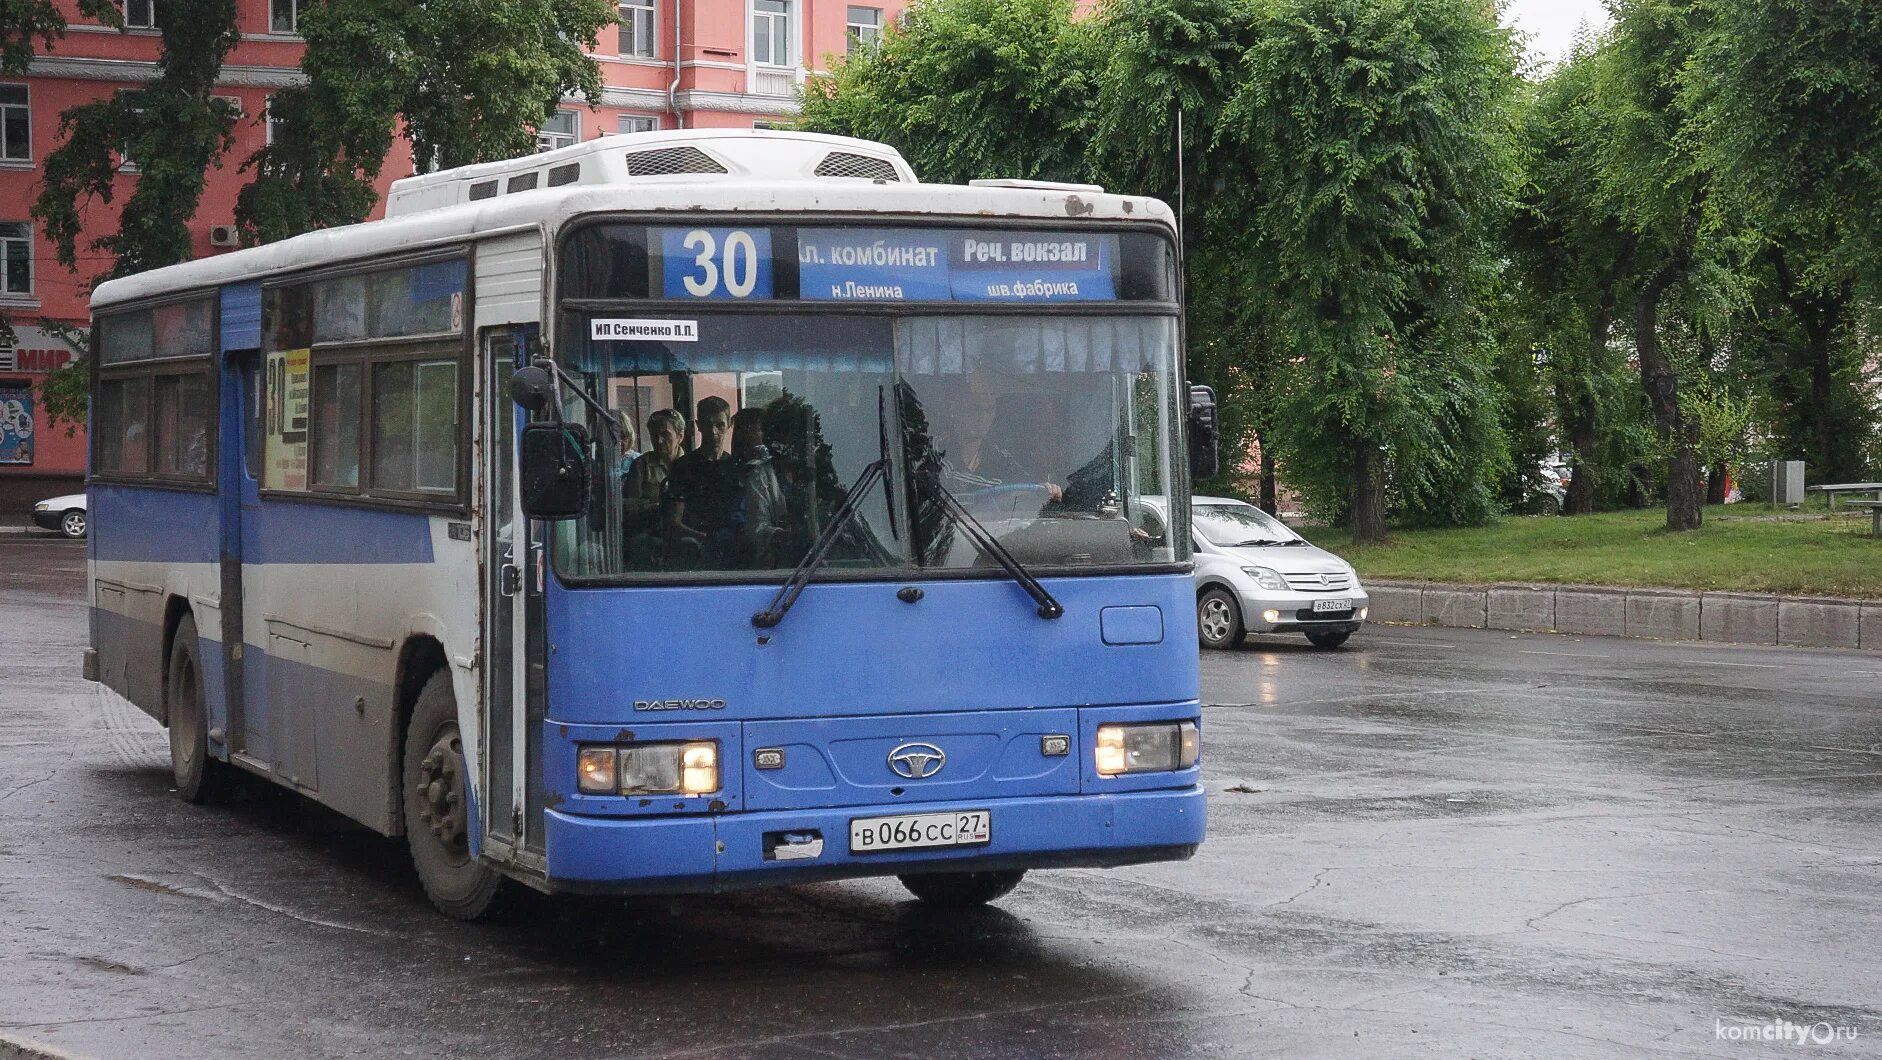 Какой автобус лучше. Автобус 301 Комсомольск-на-Амуре Хабаровск. 304 Автобус Хабаровск Комсомольск. Автобусный парк Комсомольска на Амуре. Автобус 1 Хабаровск.